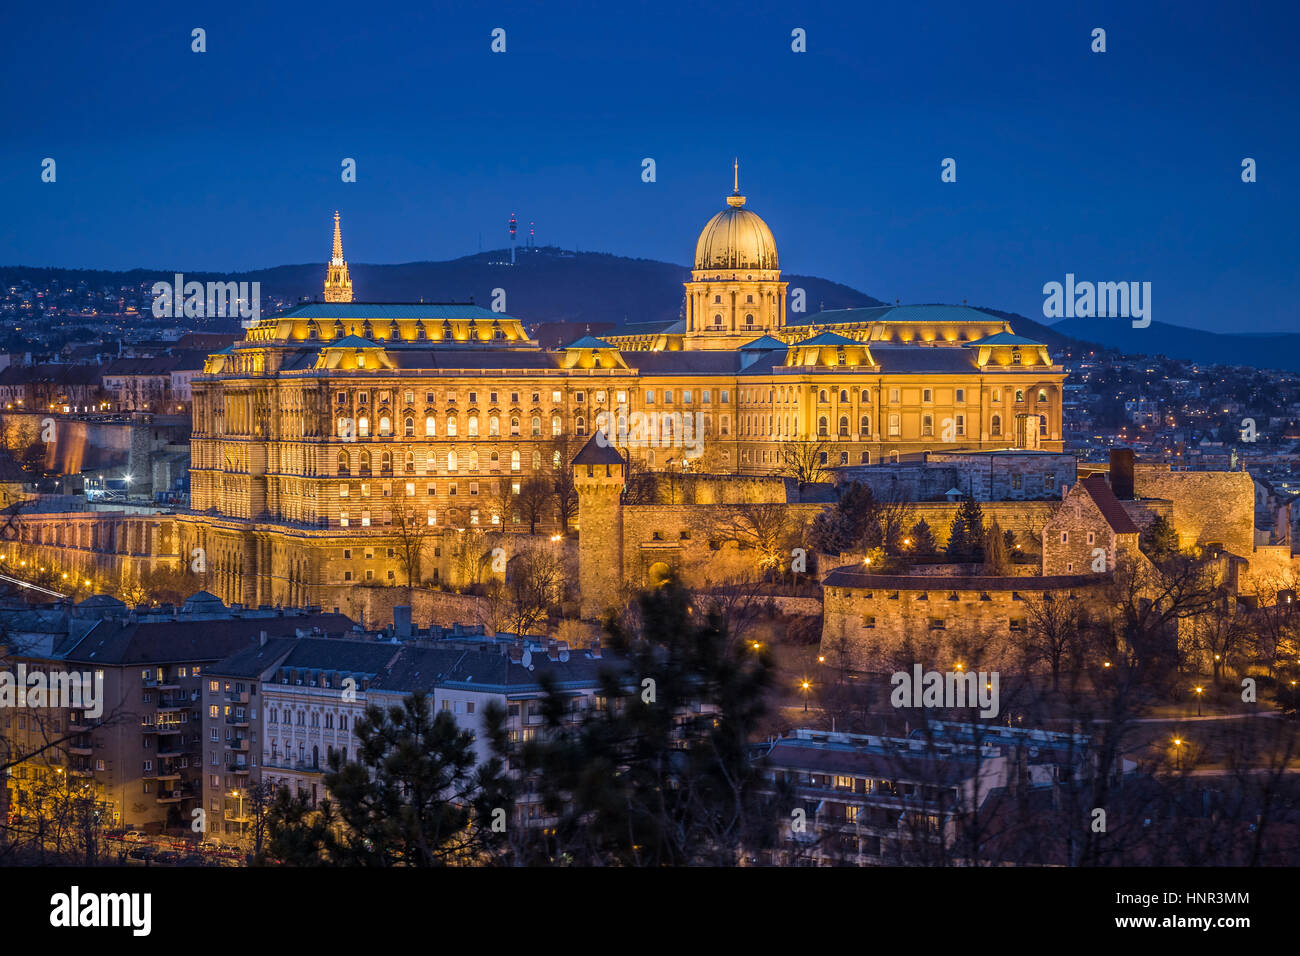 Budapest, Ungheria - il bellissimo Castello di Buda (Palazzo Reale) come visto dalla collina Gellert illuminato nel periodo invernale a blue ora Foto Stock